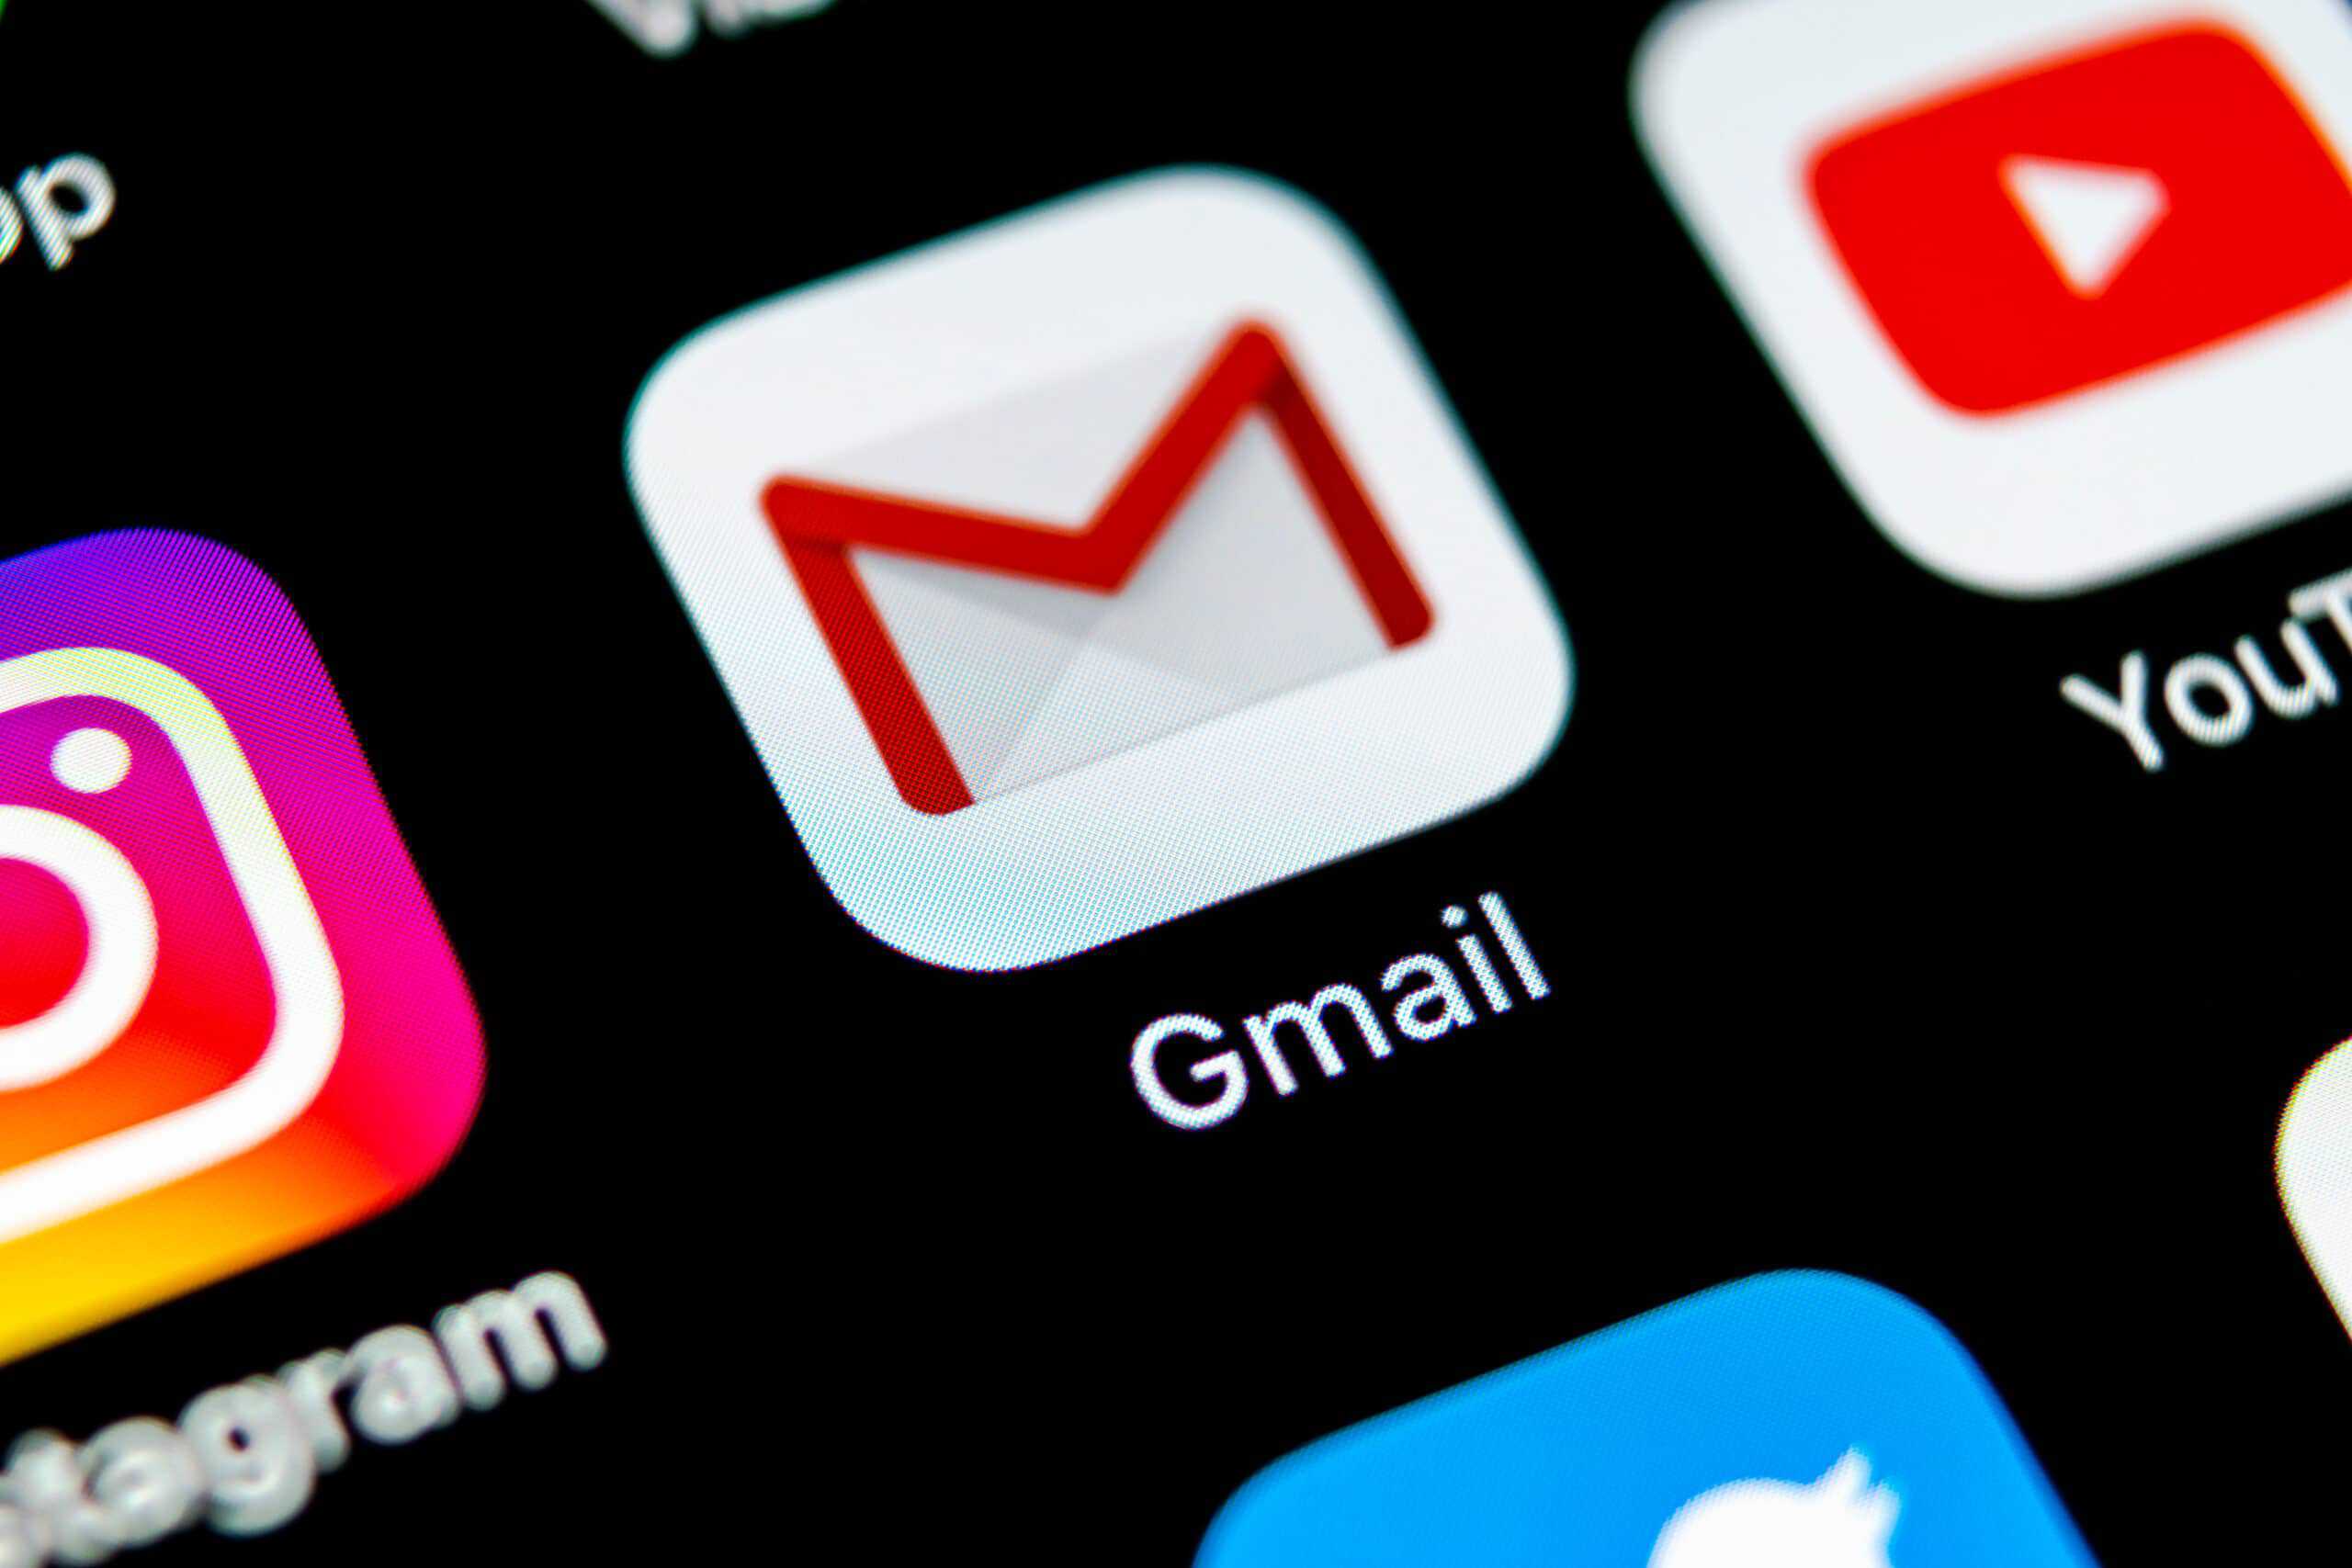 Imagem para ilustrar tutorial sobre o Gmail